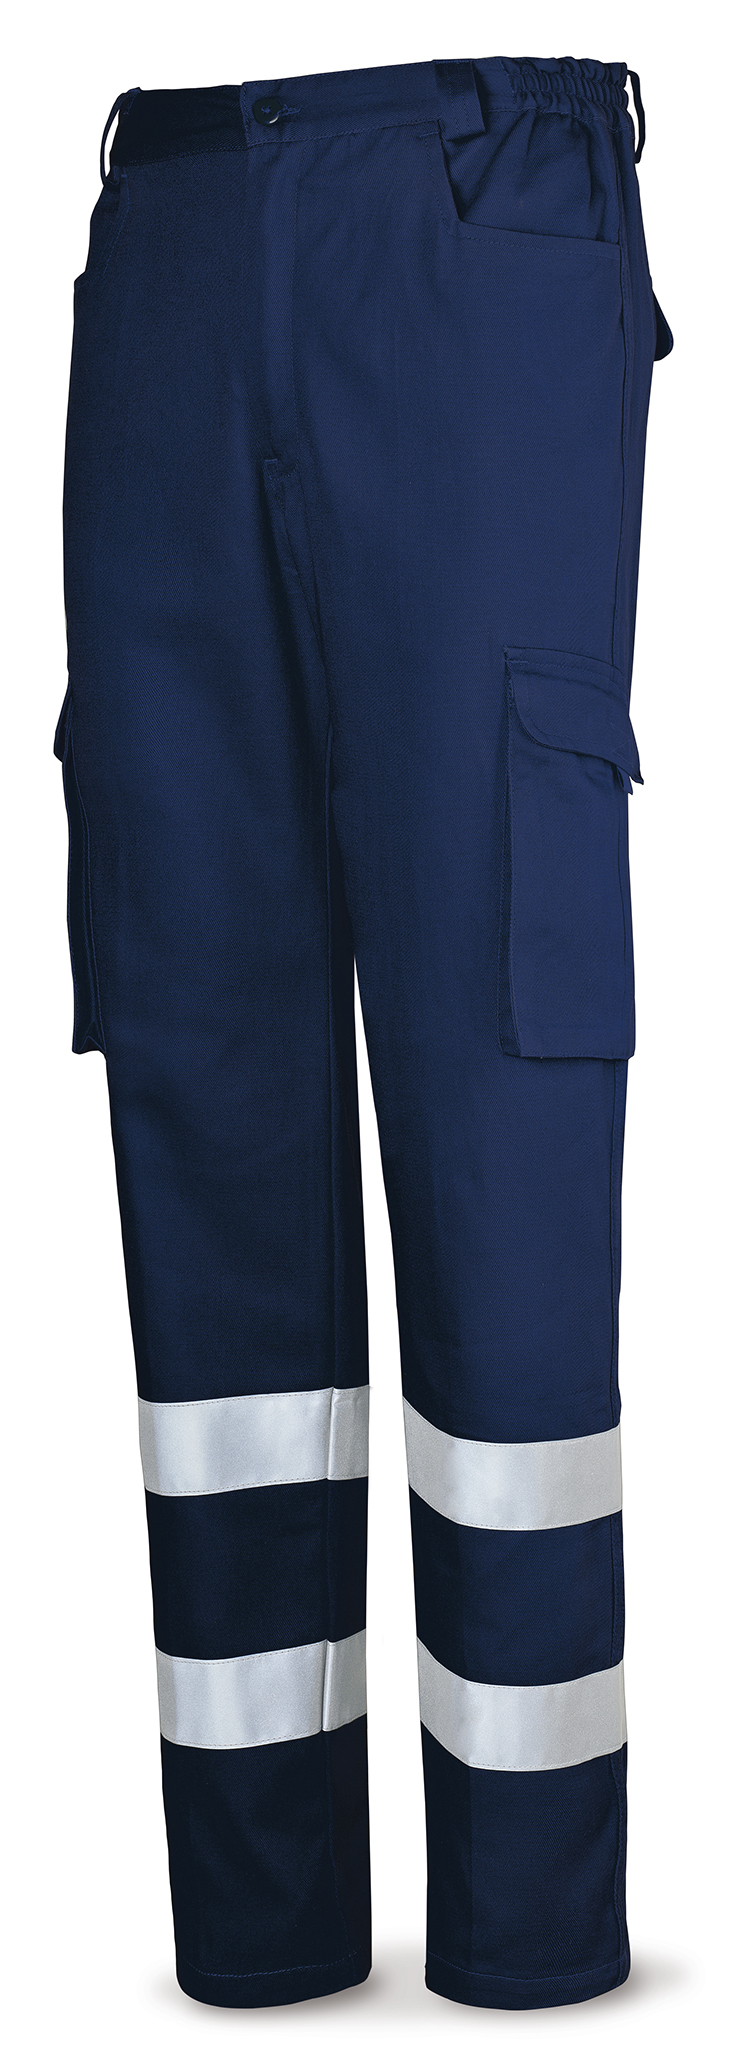 488-PACR Top Vetements de travail laboral Série Top Pantalon en coton bleu marine à bandes réfléchissantes 245 g.